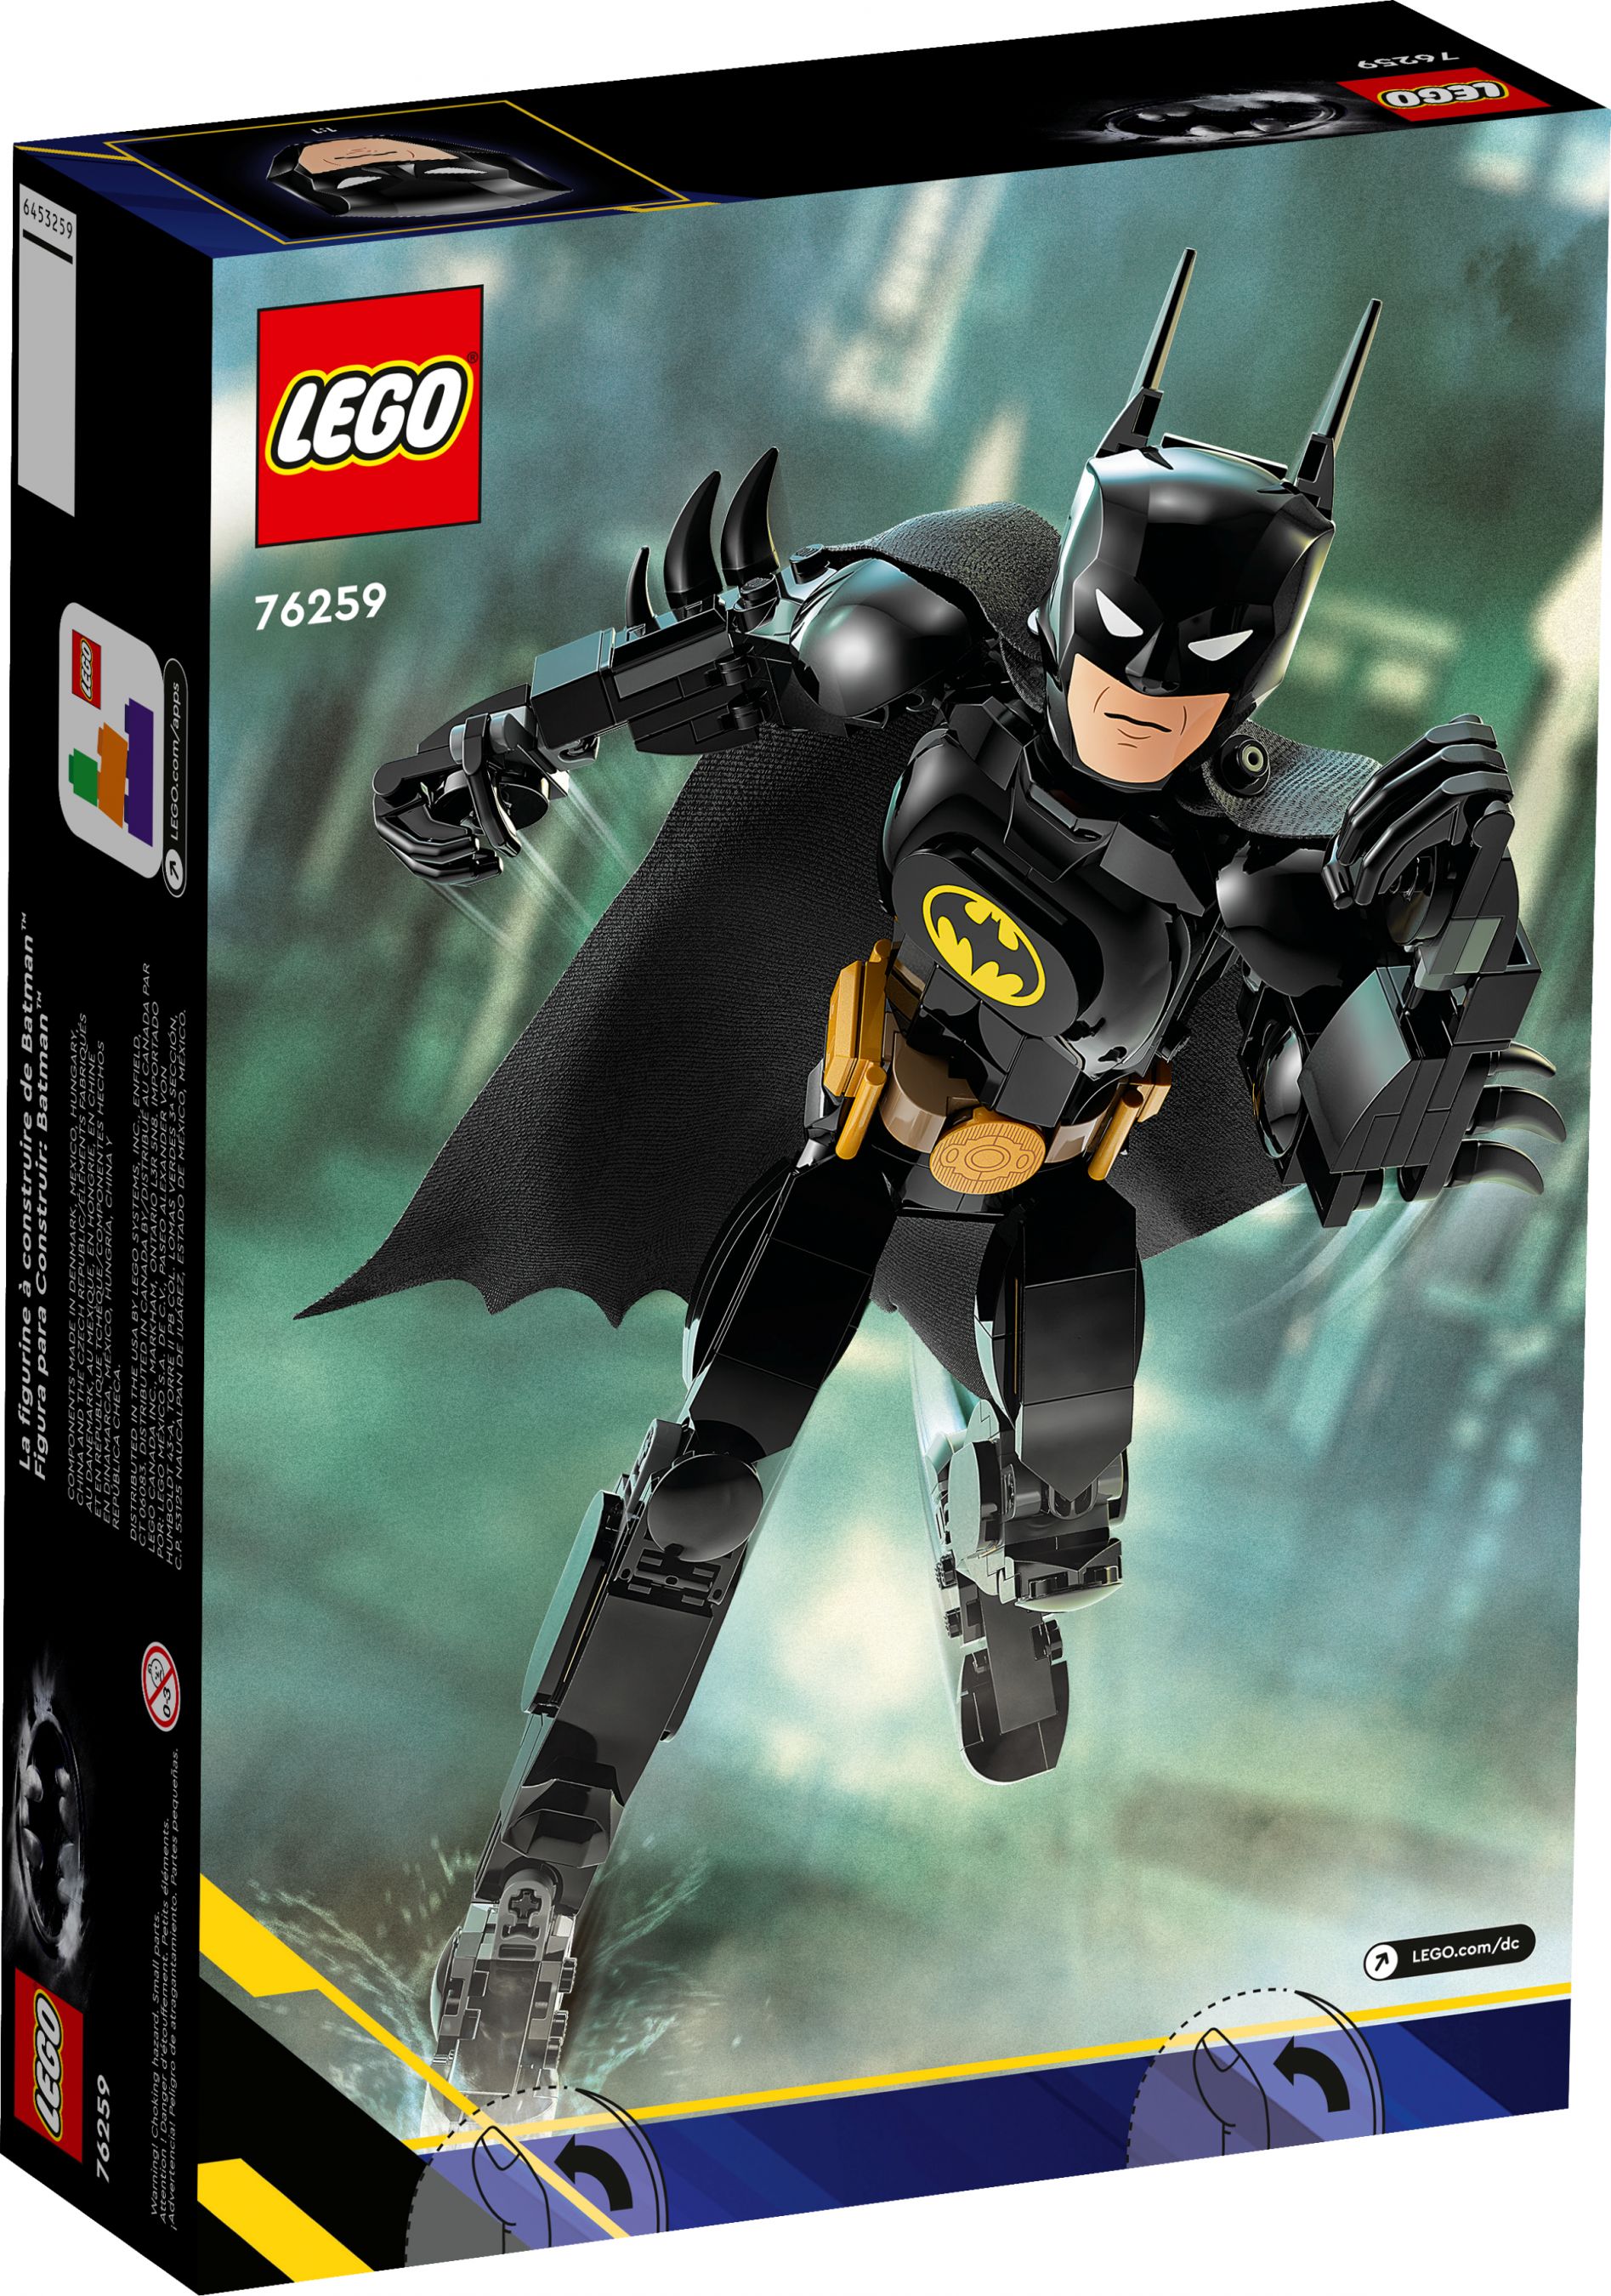 LEGO Super Heroes 76259 Batman™ Baufigur LEGO_76259_alt3.jpg